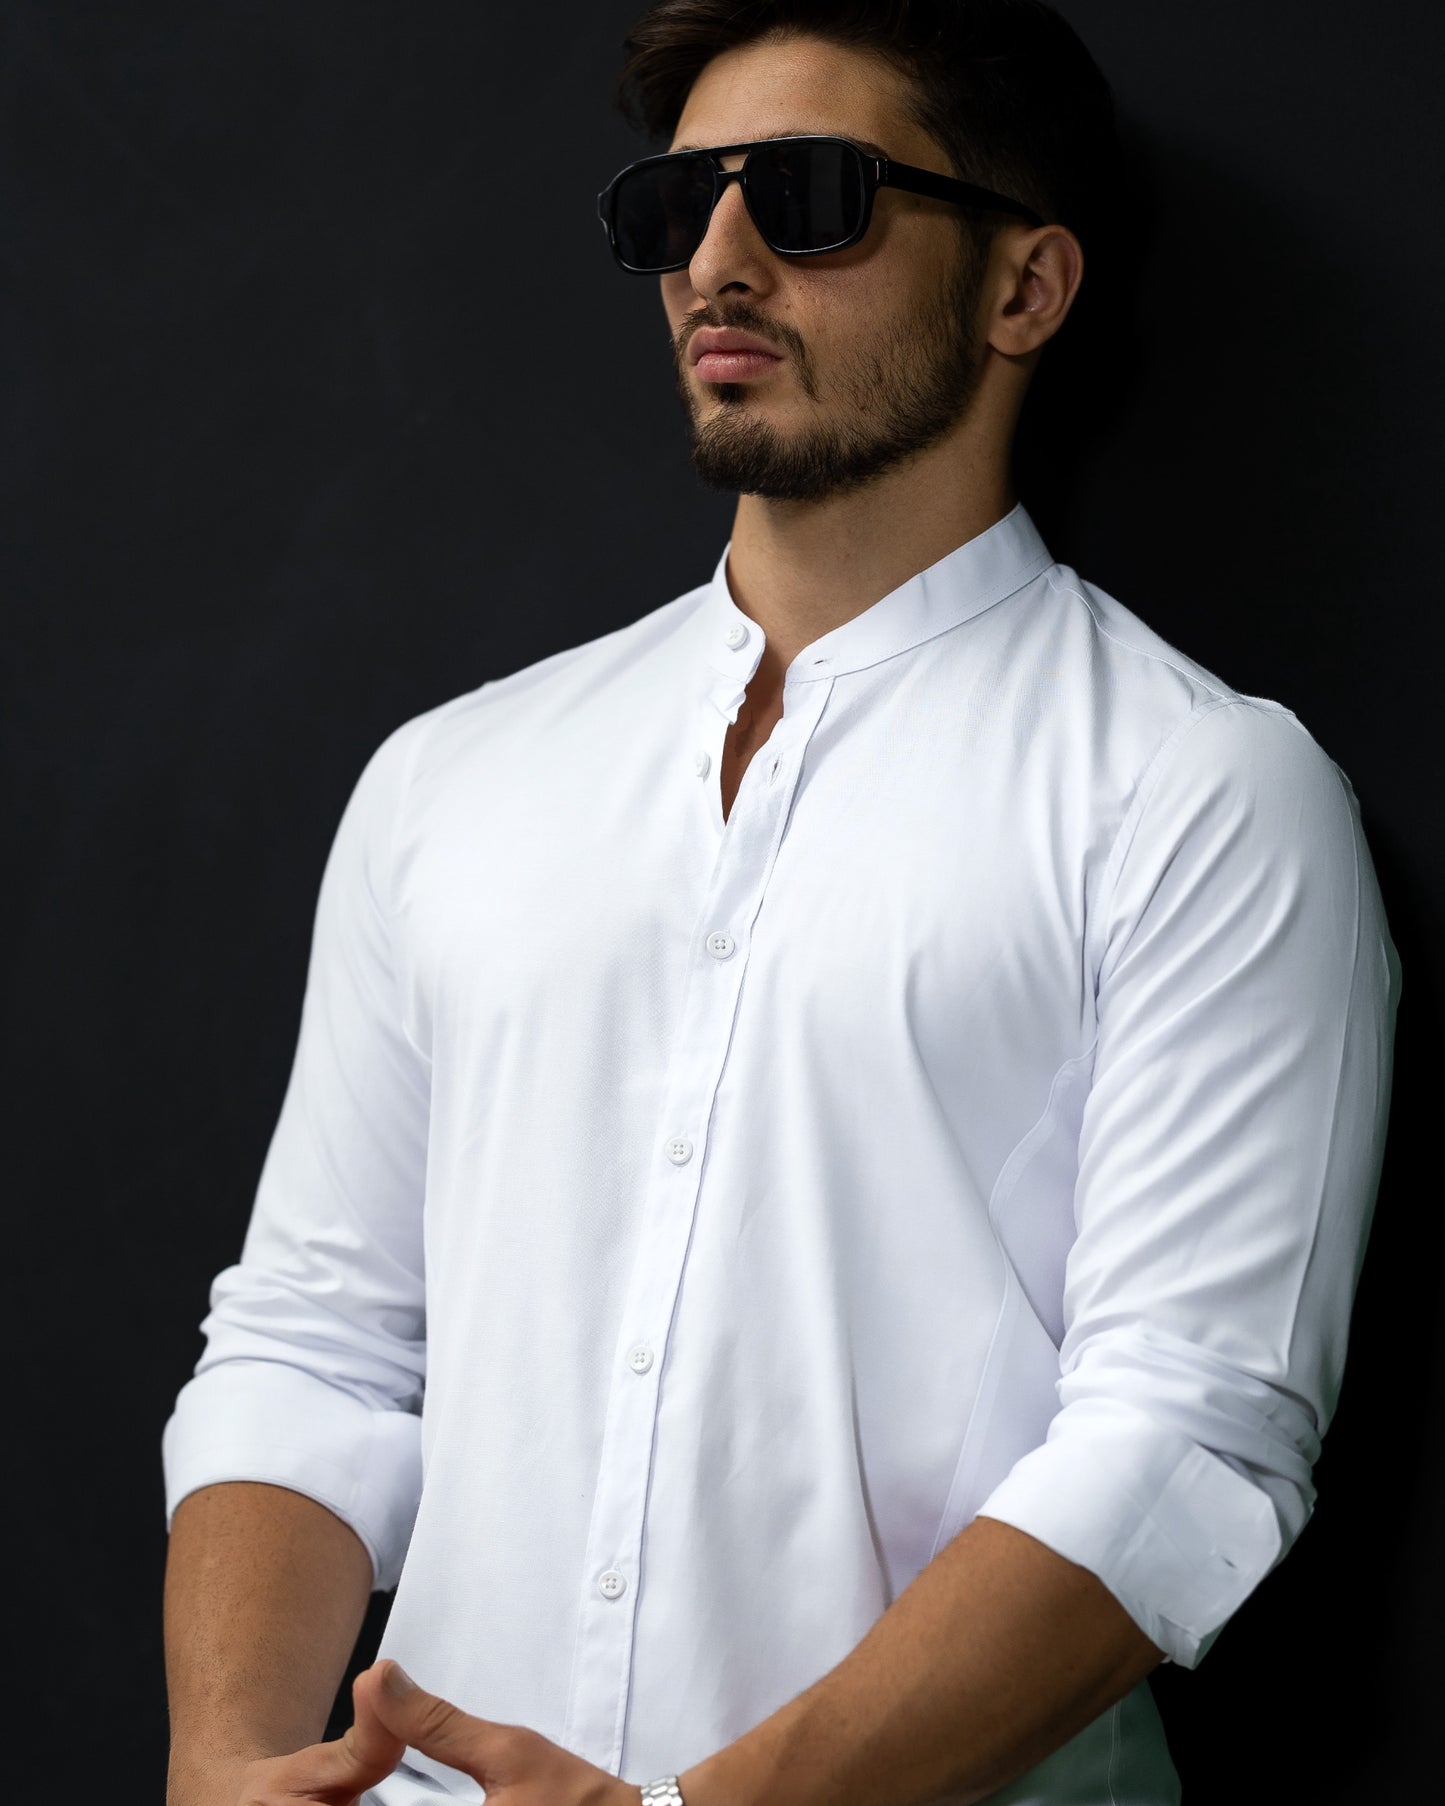 Біла базова приталена сорочка без коміра на кнопках M L XL XXL 3XL 01-29-401